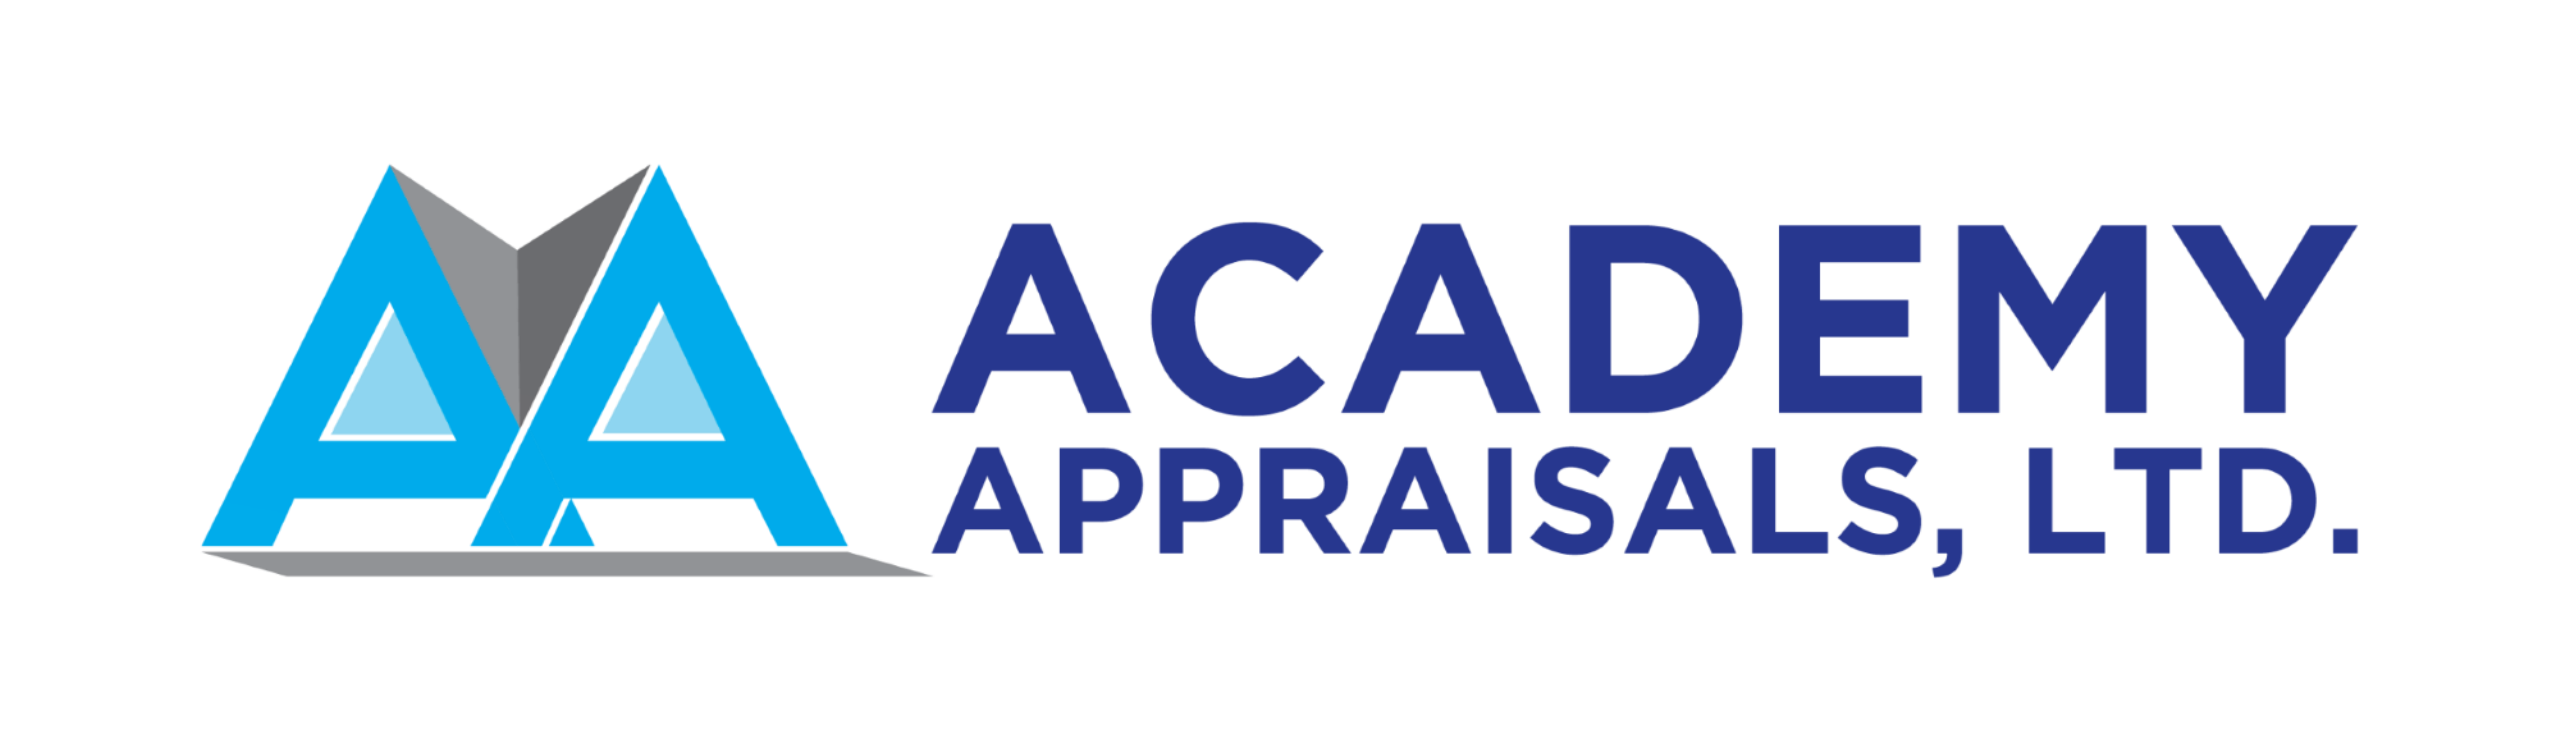 Academy Appraisals, Ltd. Logo